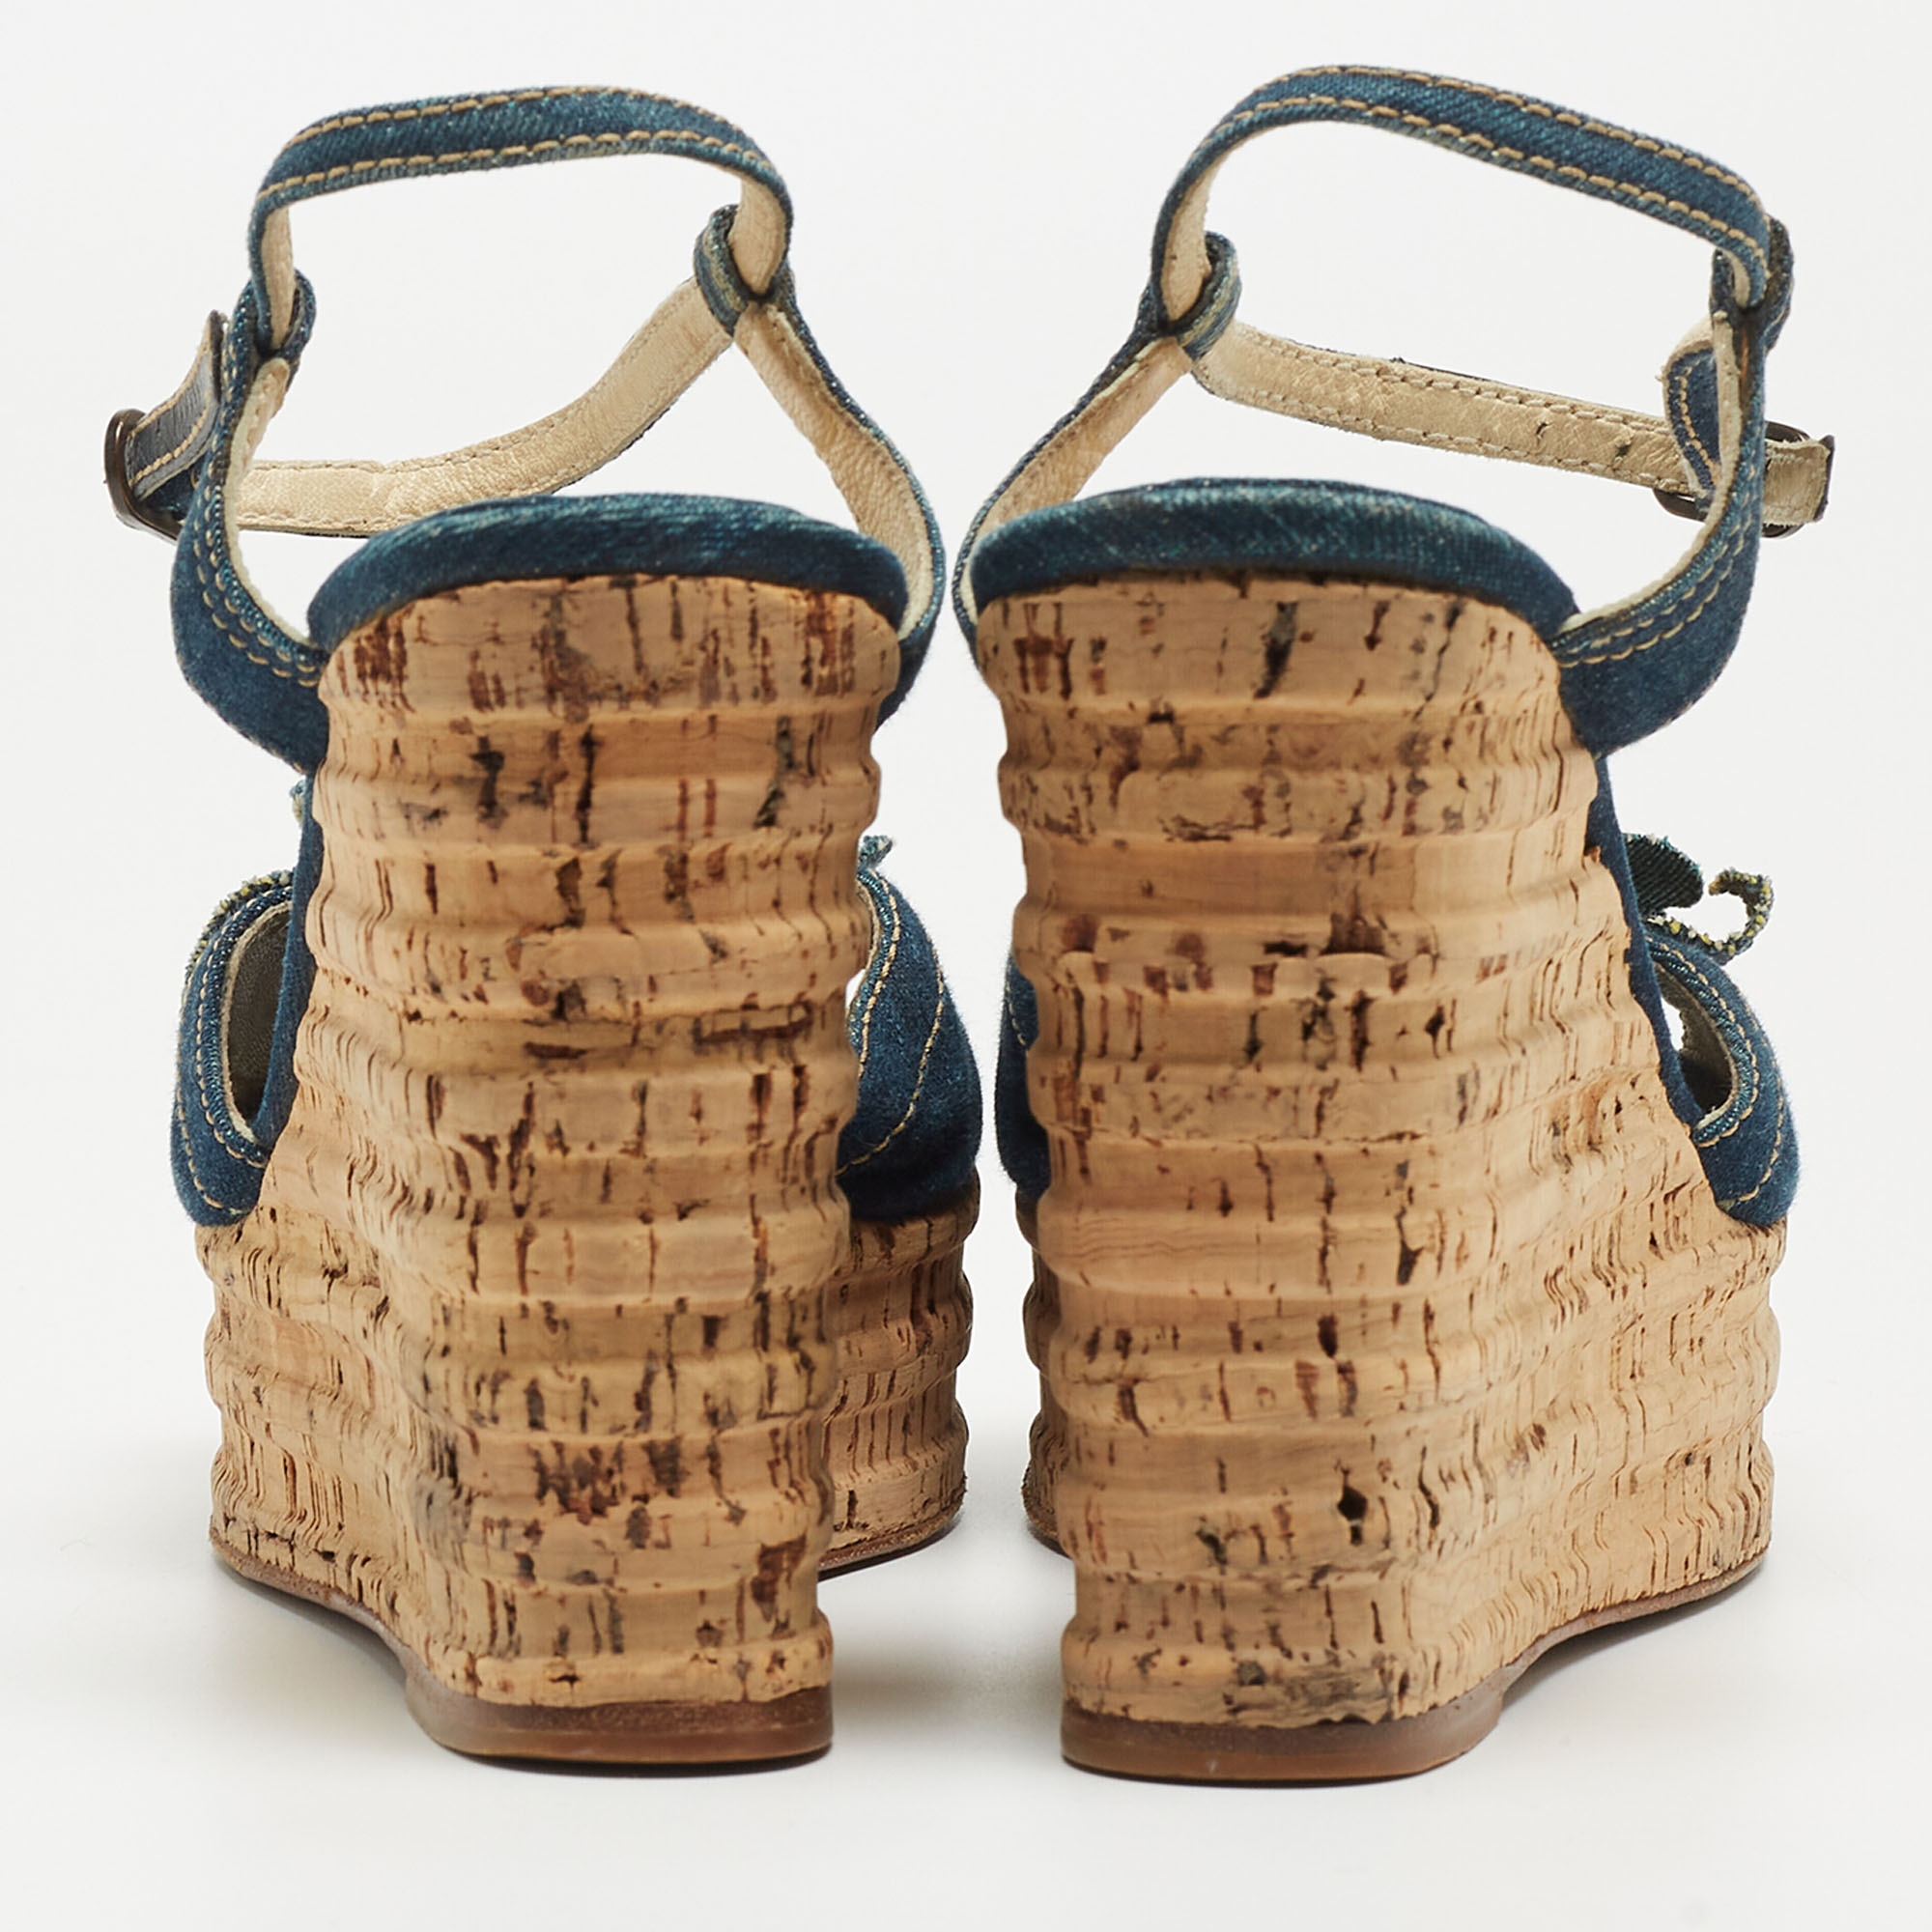 Chanel Navy Blue Denim Camellia Cork Wedge Platform Ankle Strap Sandals Size 41